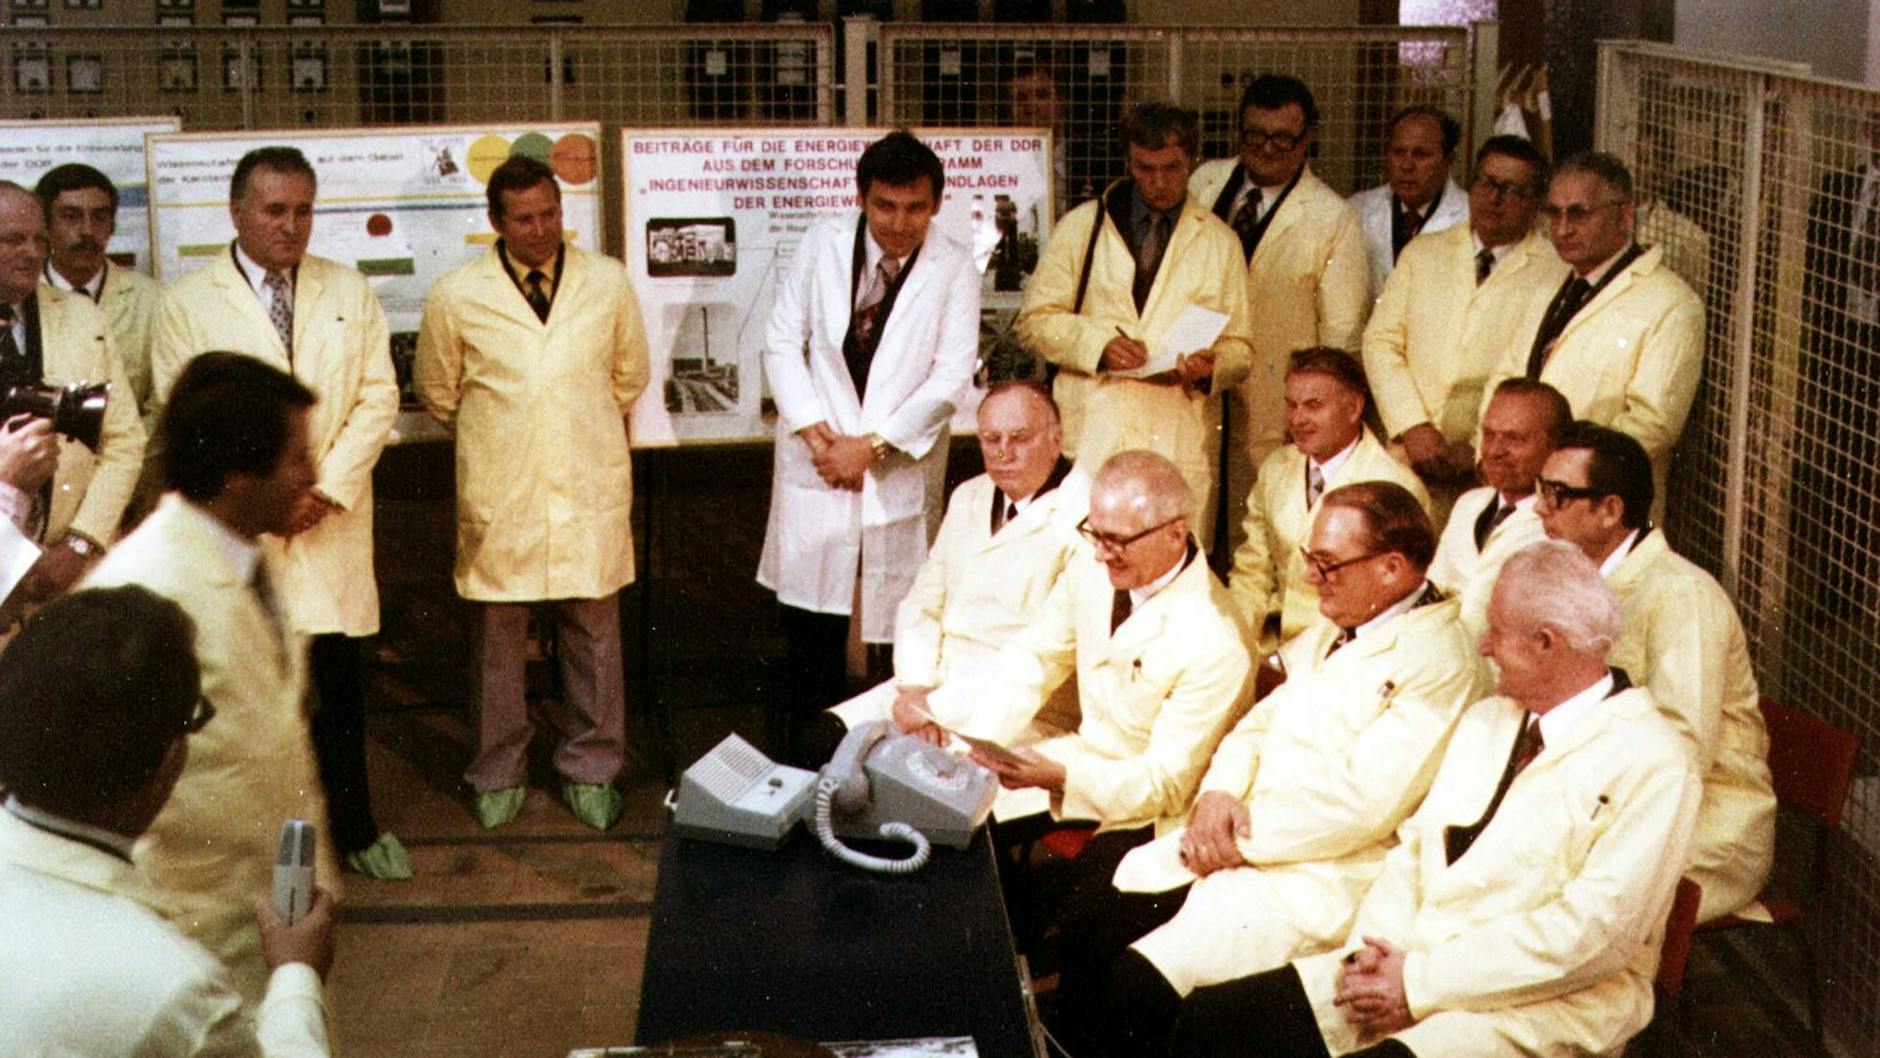 1978 wird der Atomforschungsreaktor der Technischen Universität Dresden in Betrieb genommen. Im Mittelpunkt: Erich Honecker, Generalsekretär der SED. Hans Modrow, damals Erster Sekretär der SED-Bezirksleitung in Dresden, musste mit einem Platz in der zweiten Reihe (3.v.r.) vorlieb nehmen.